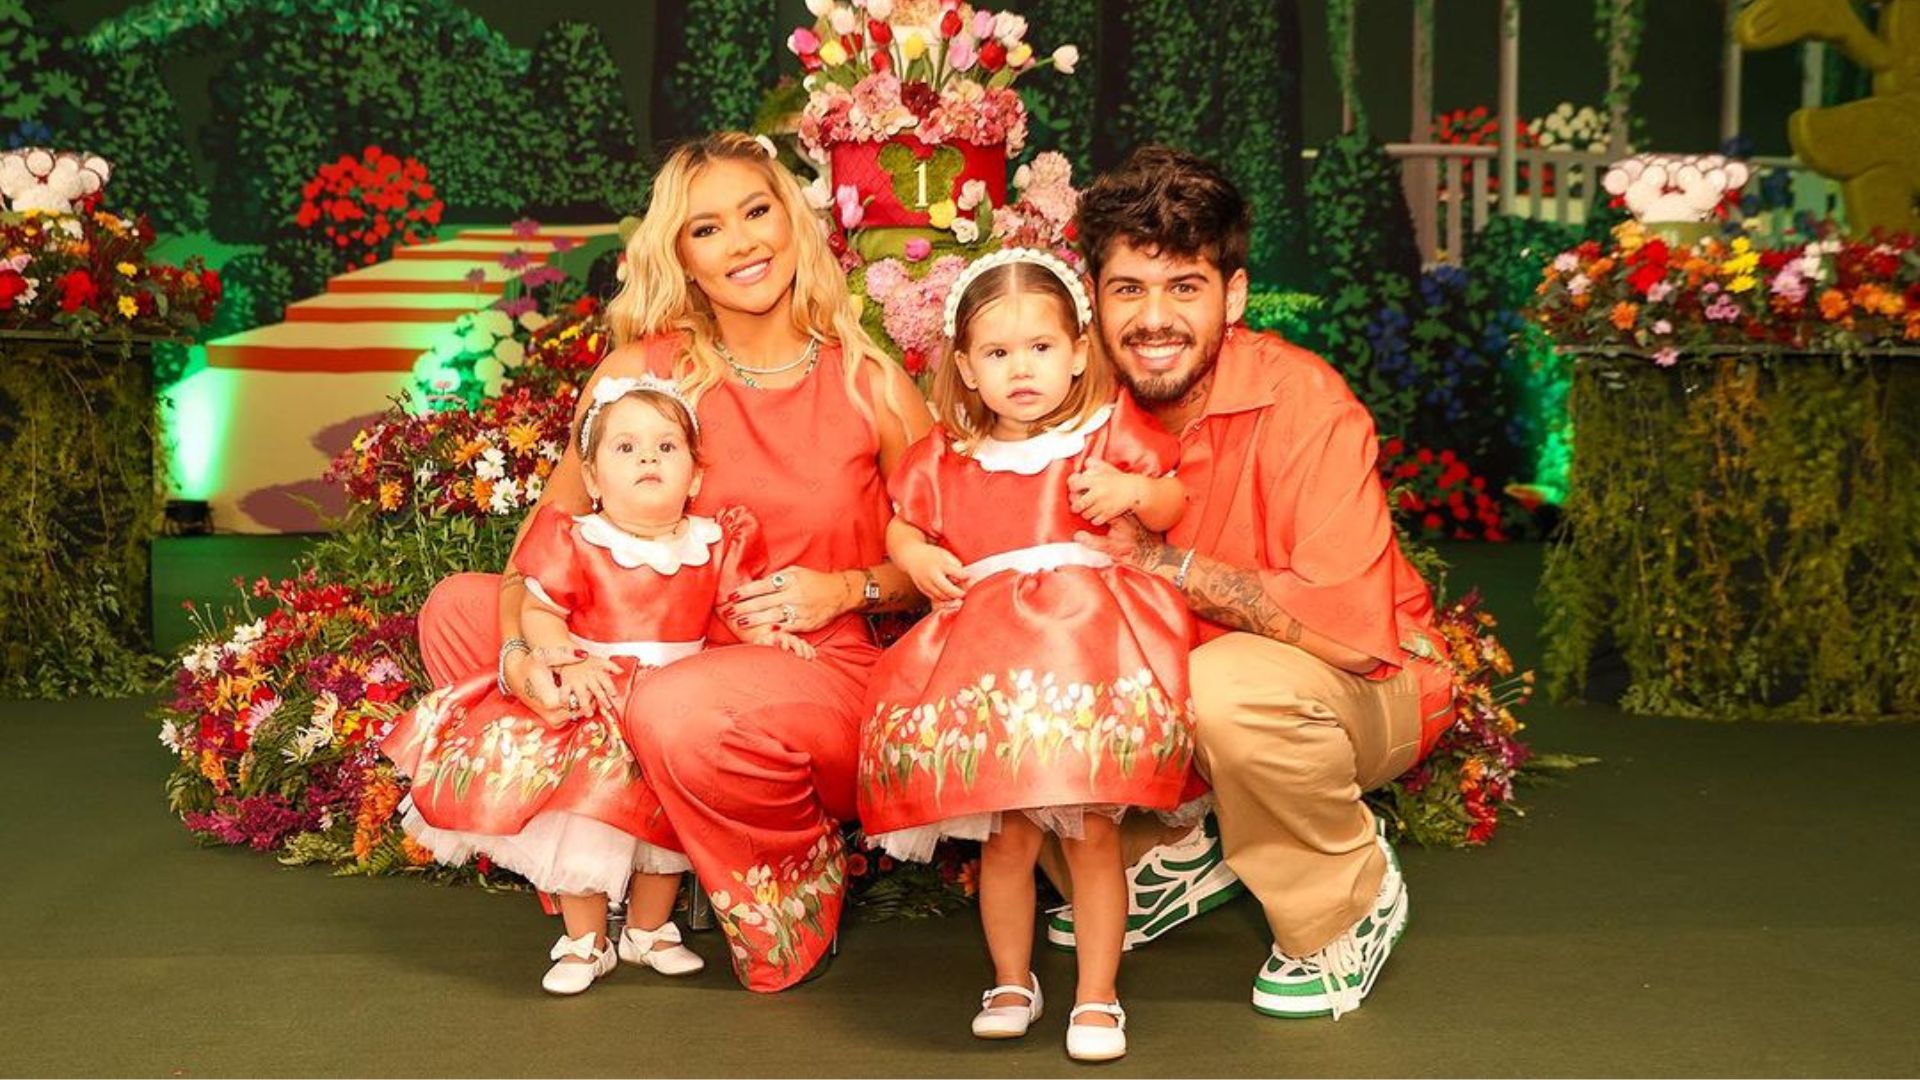 Virginia Fonseca ao lado do marido Zé Felipe com as filhas Maria Alice e Maria Flor, com roupas do tema de aniversário de 1 ano da caçula